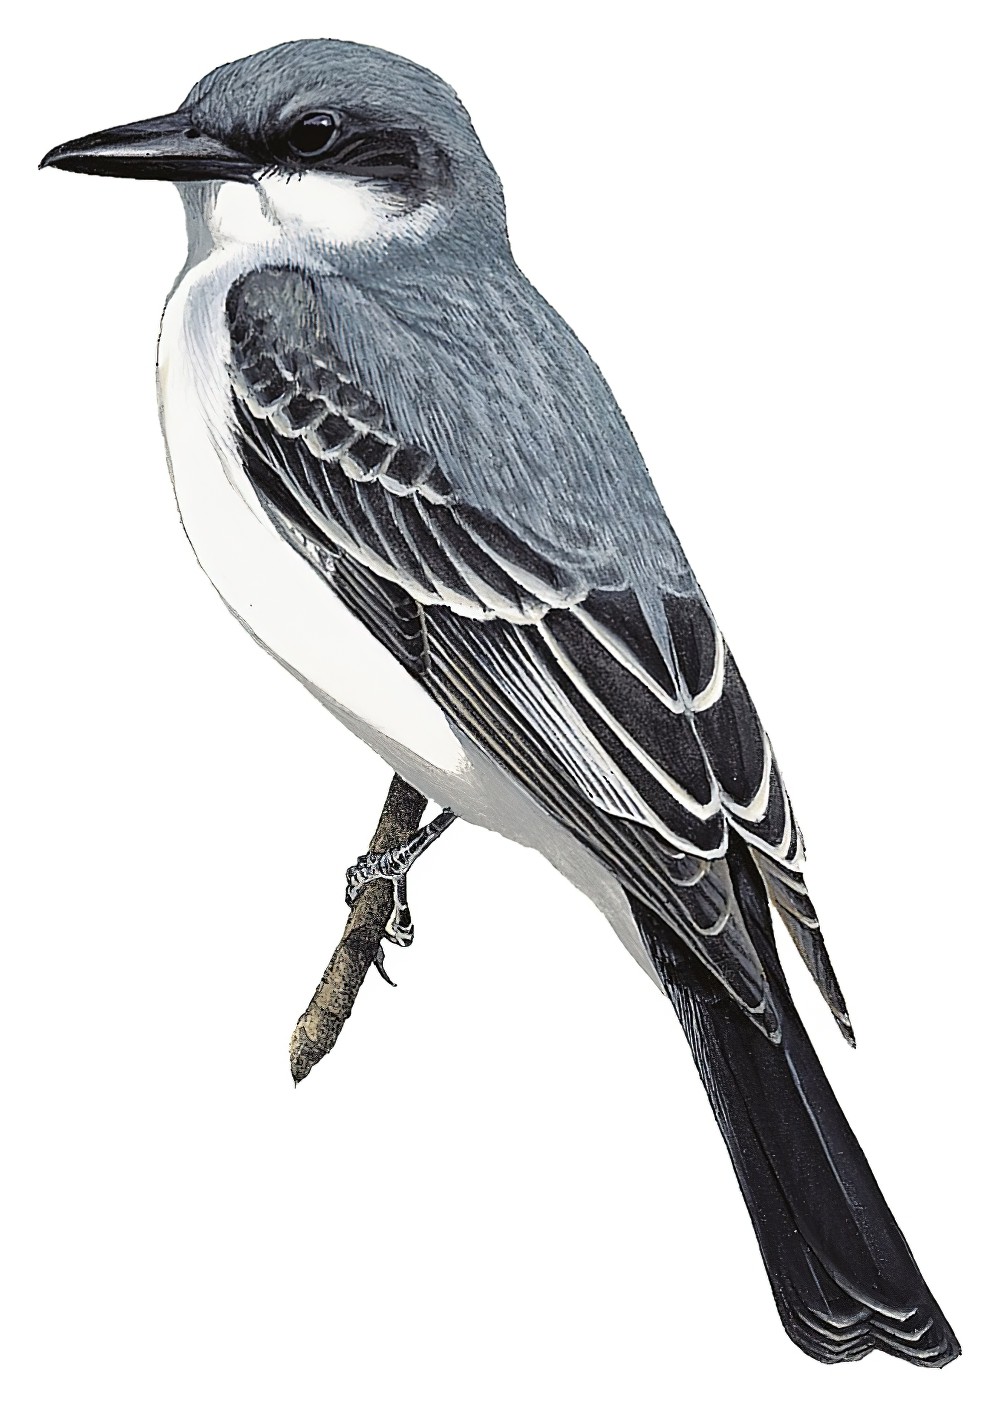 Gray Kingbird / Tyrannus dominicensis